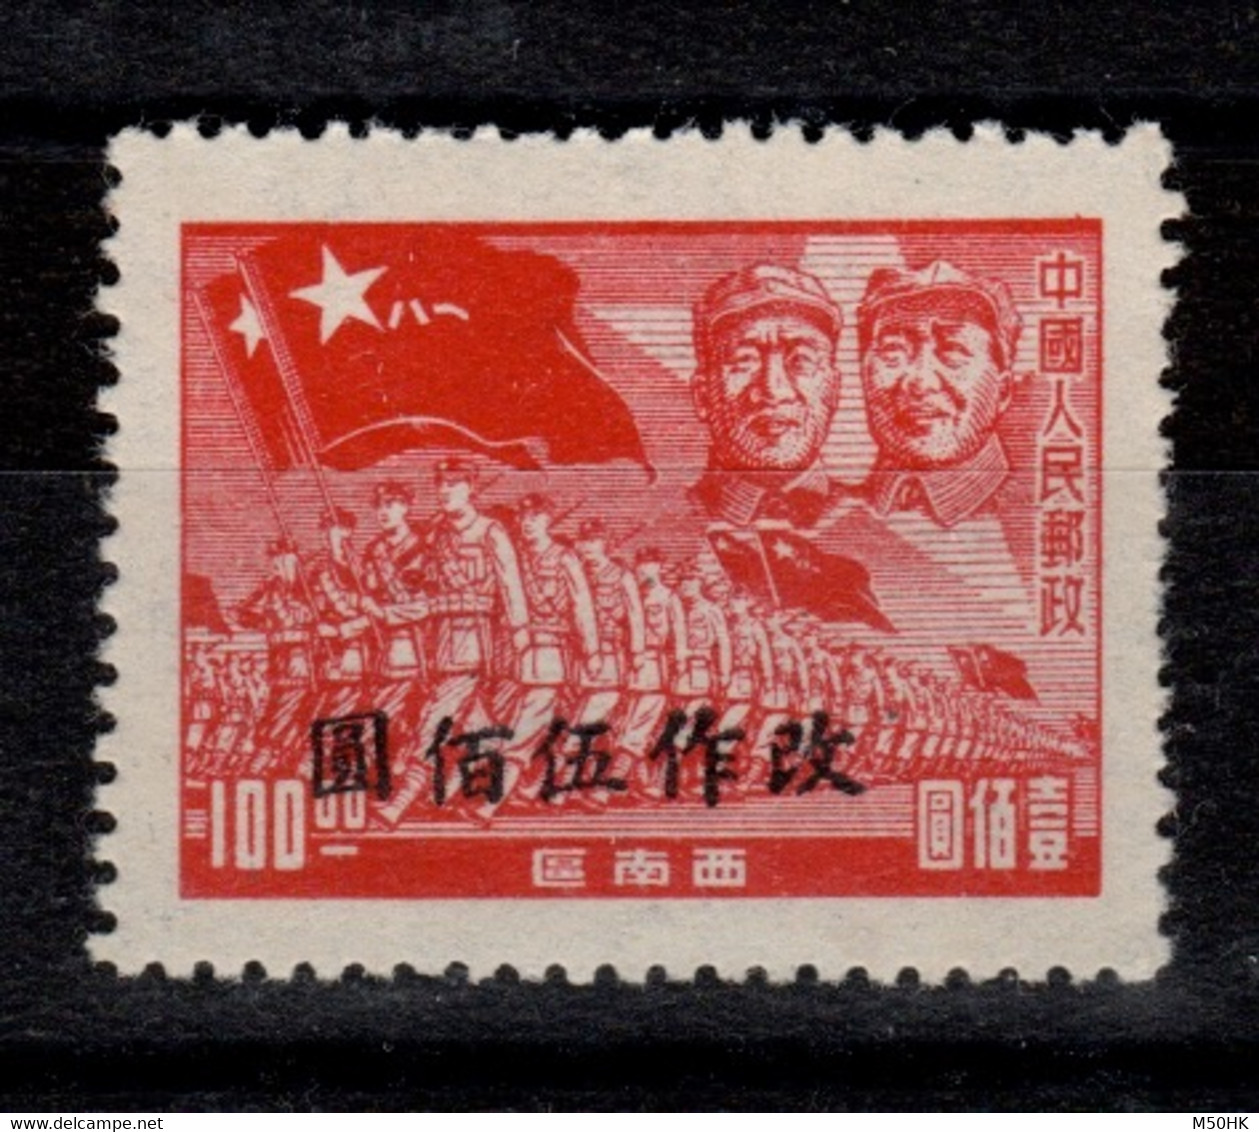 Chine Du Sud Ouest - Timbre Surchargé De 1949 / 1950 NSG MNG As Issued - Chine Du Sud-Ouest 1949-50